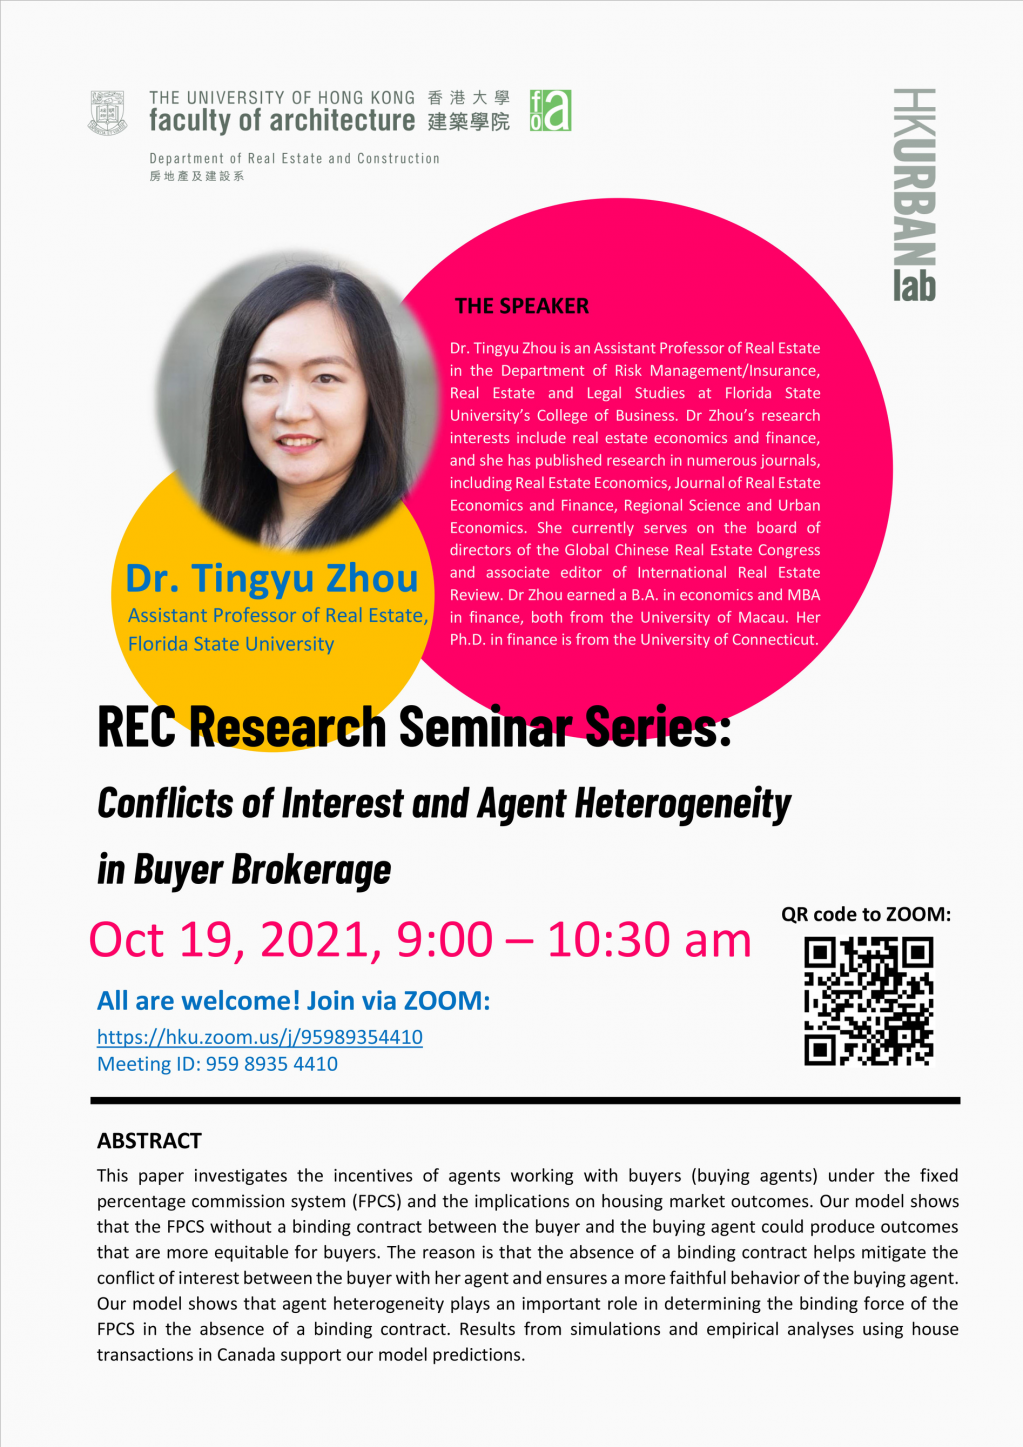 REC Research Seminar Series -